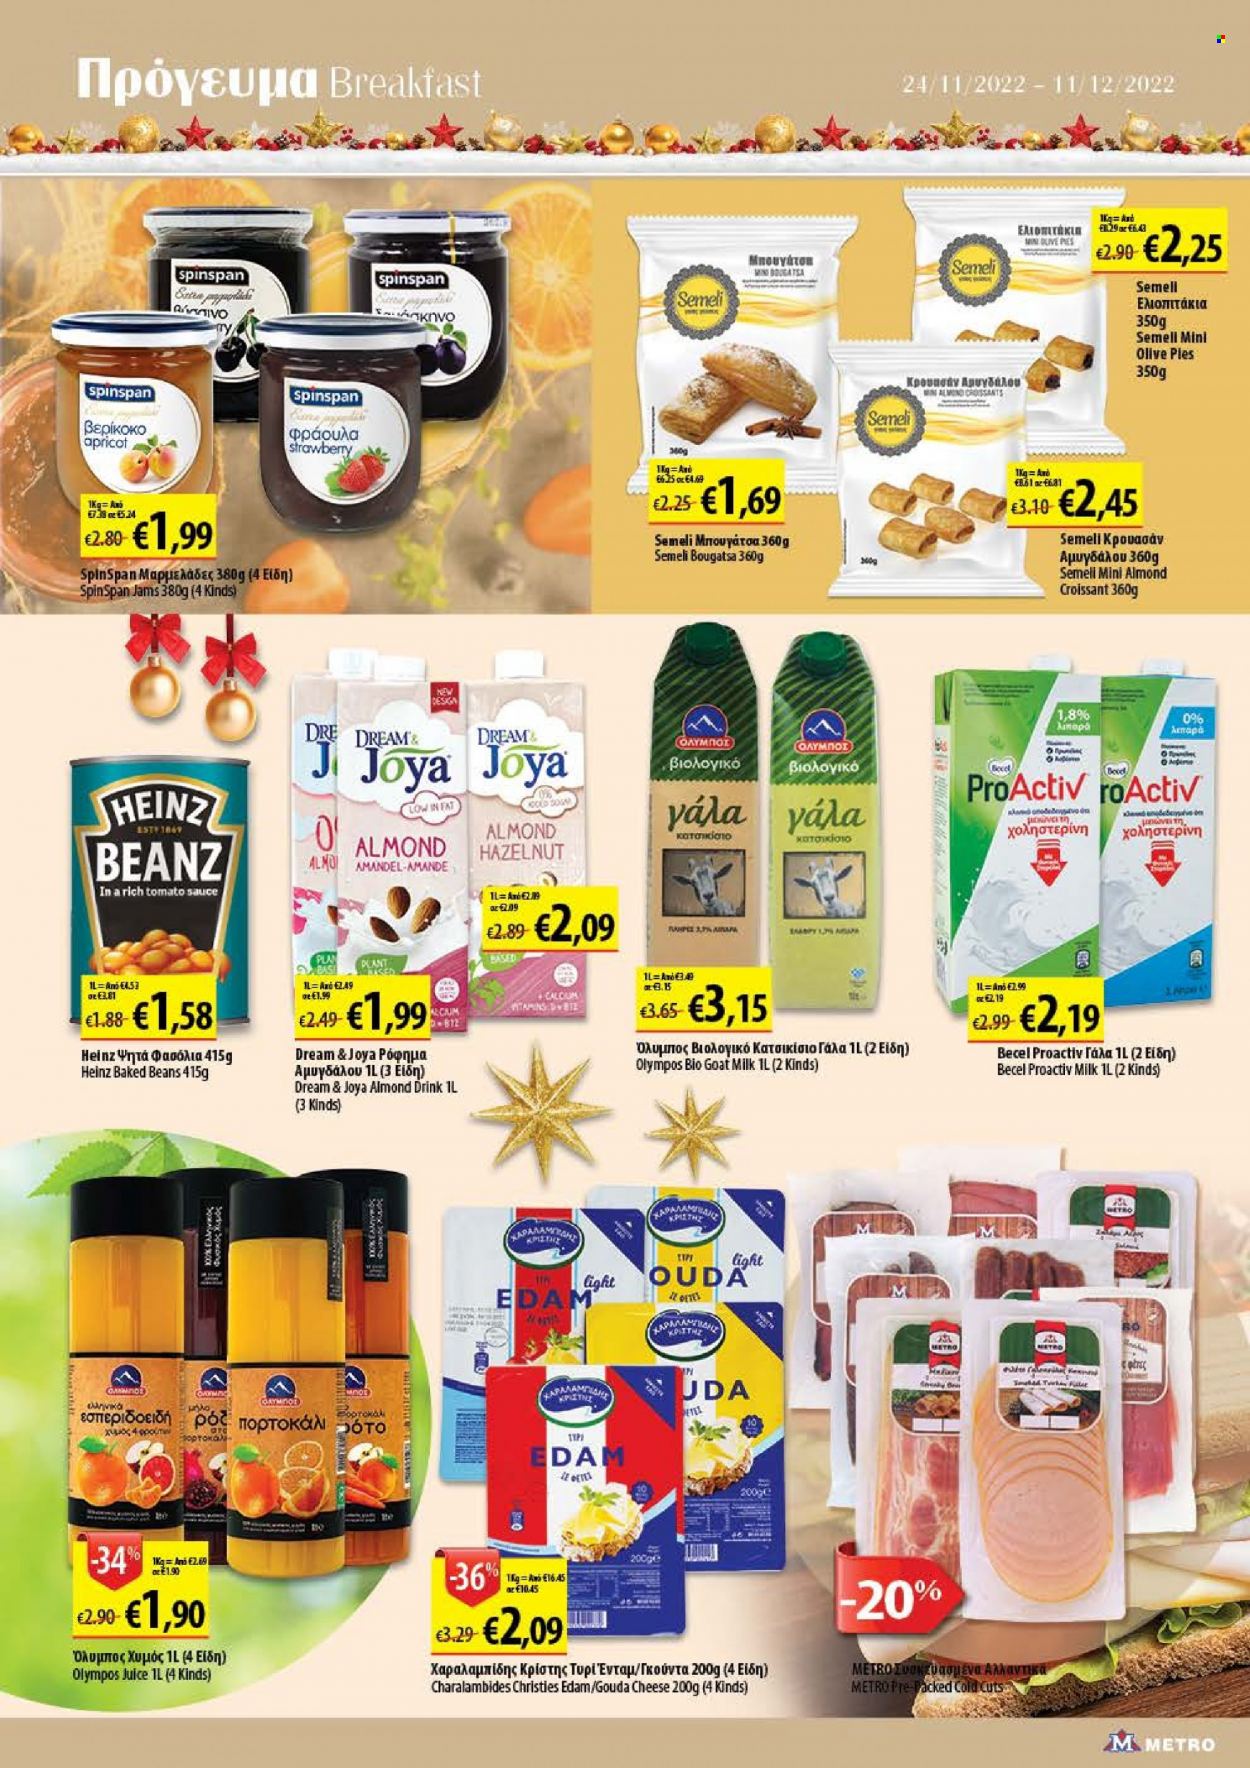 thumbnail - Φυλλάδια Metro - 24.11.2022 - 11.12.2022 - Εκπτωτικά προϊόντα - φασόλια, gouda, ένταμ, γάλα, κατσικίσιο γάλα, Heinz, calcium. Σελίδα 6.